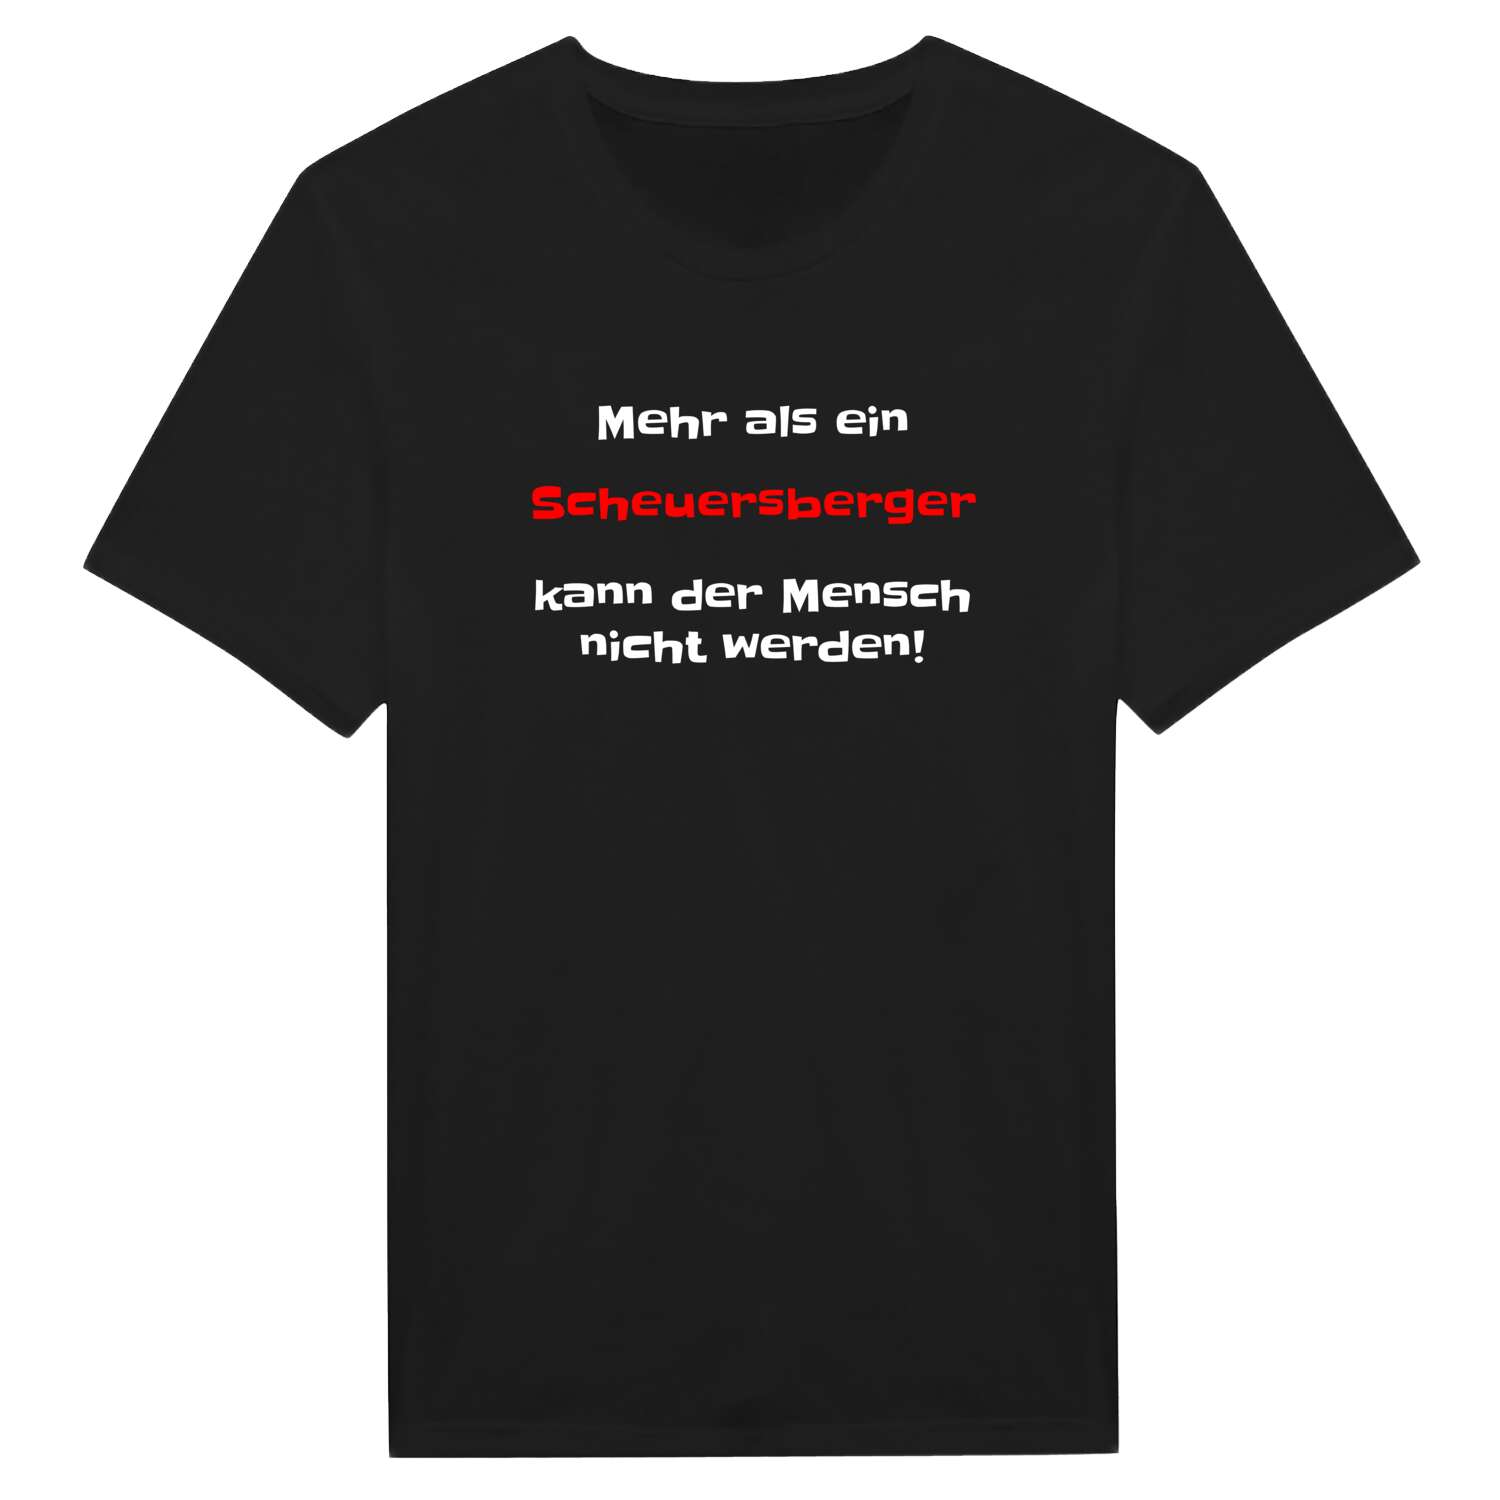 Scheuersberg T-Shirt »Mehr als ein«